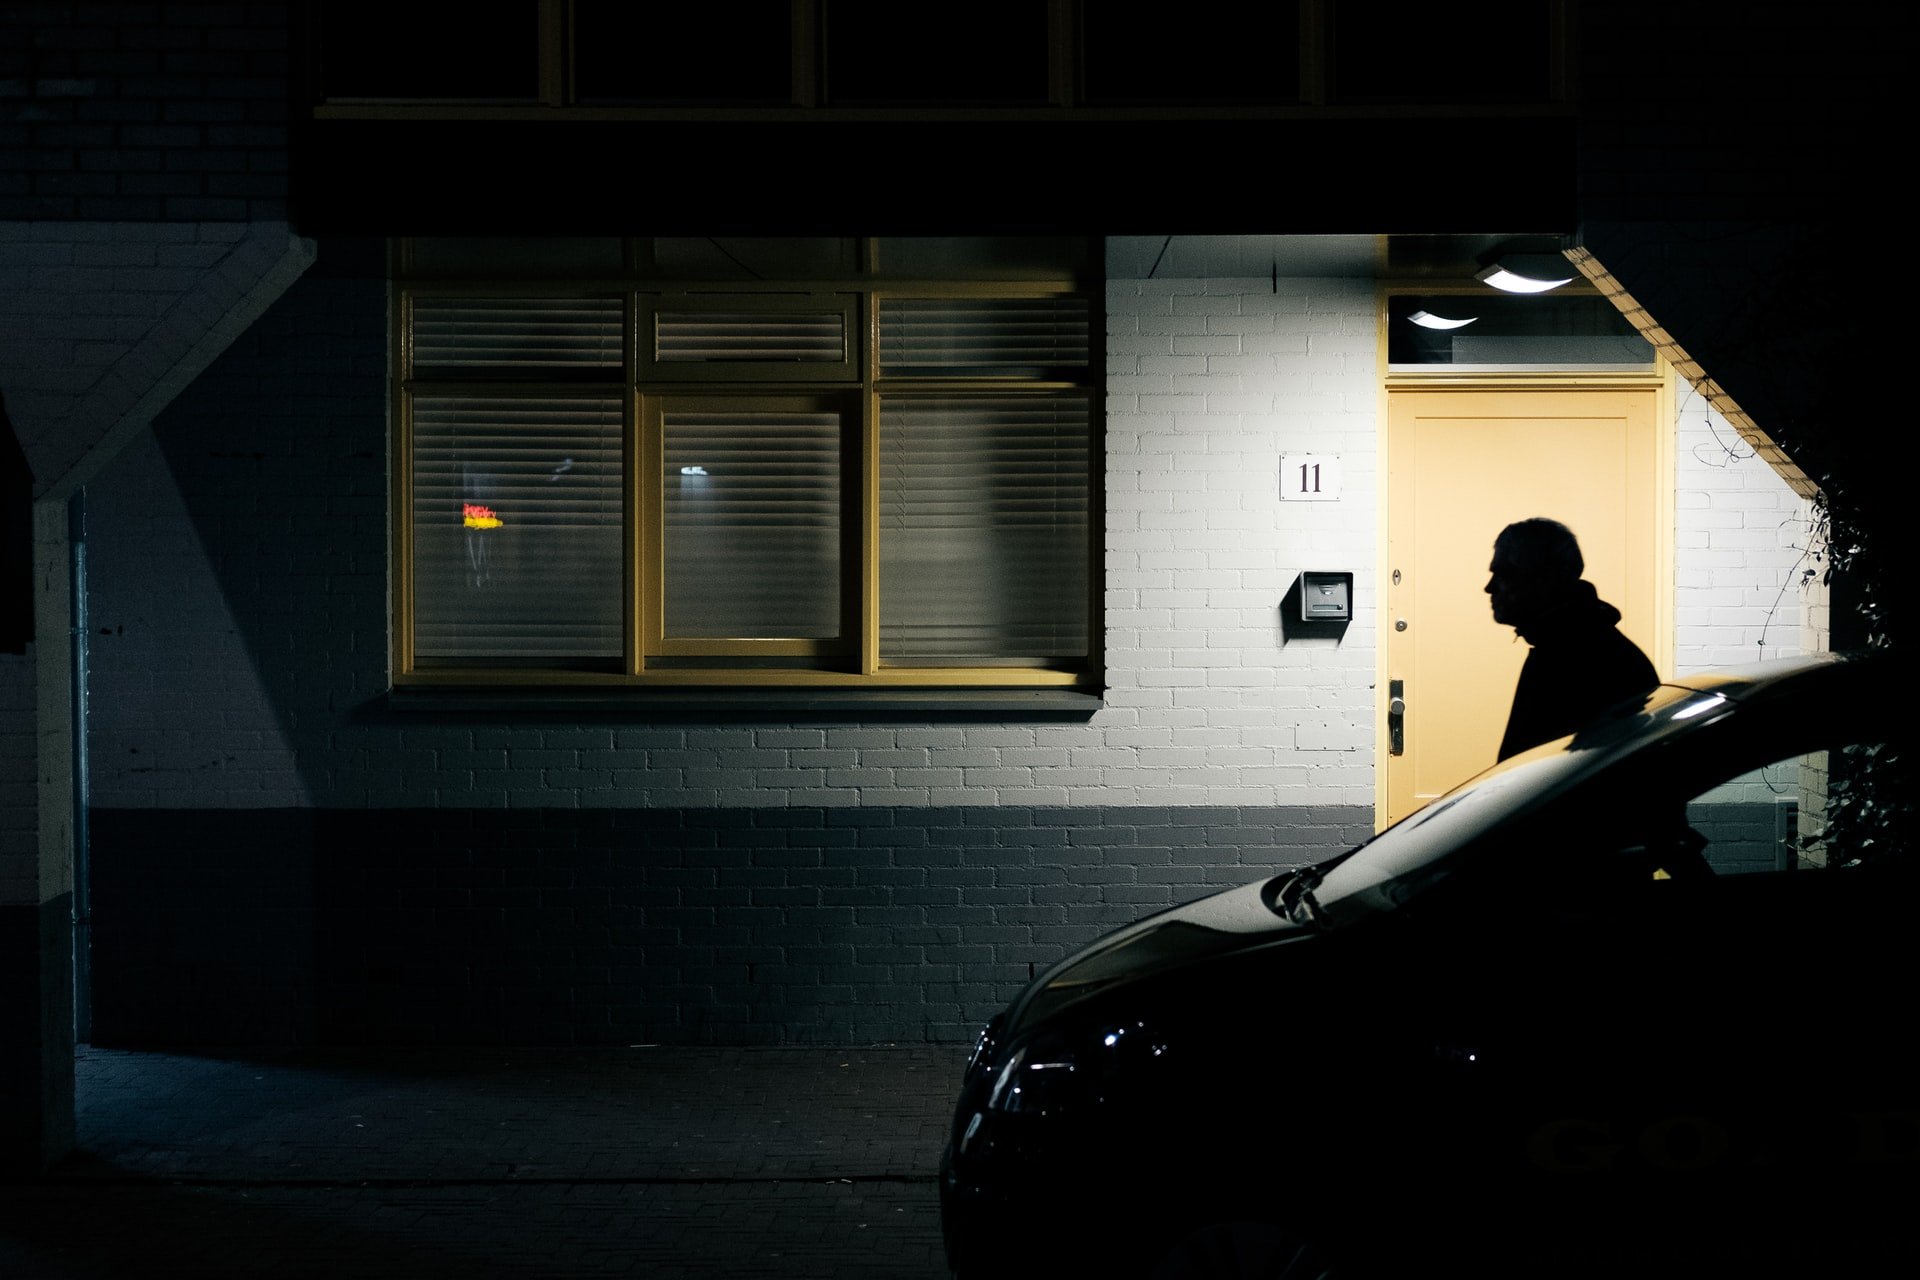 A man walking in the dark | Source: Unsplash